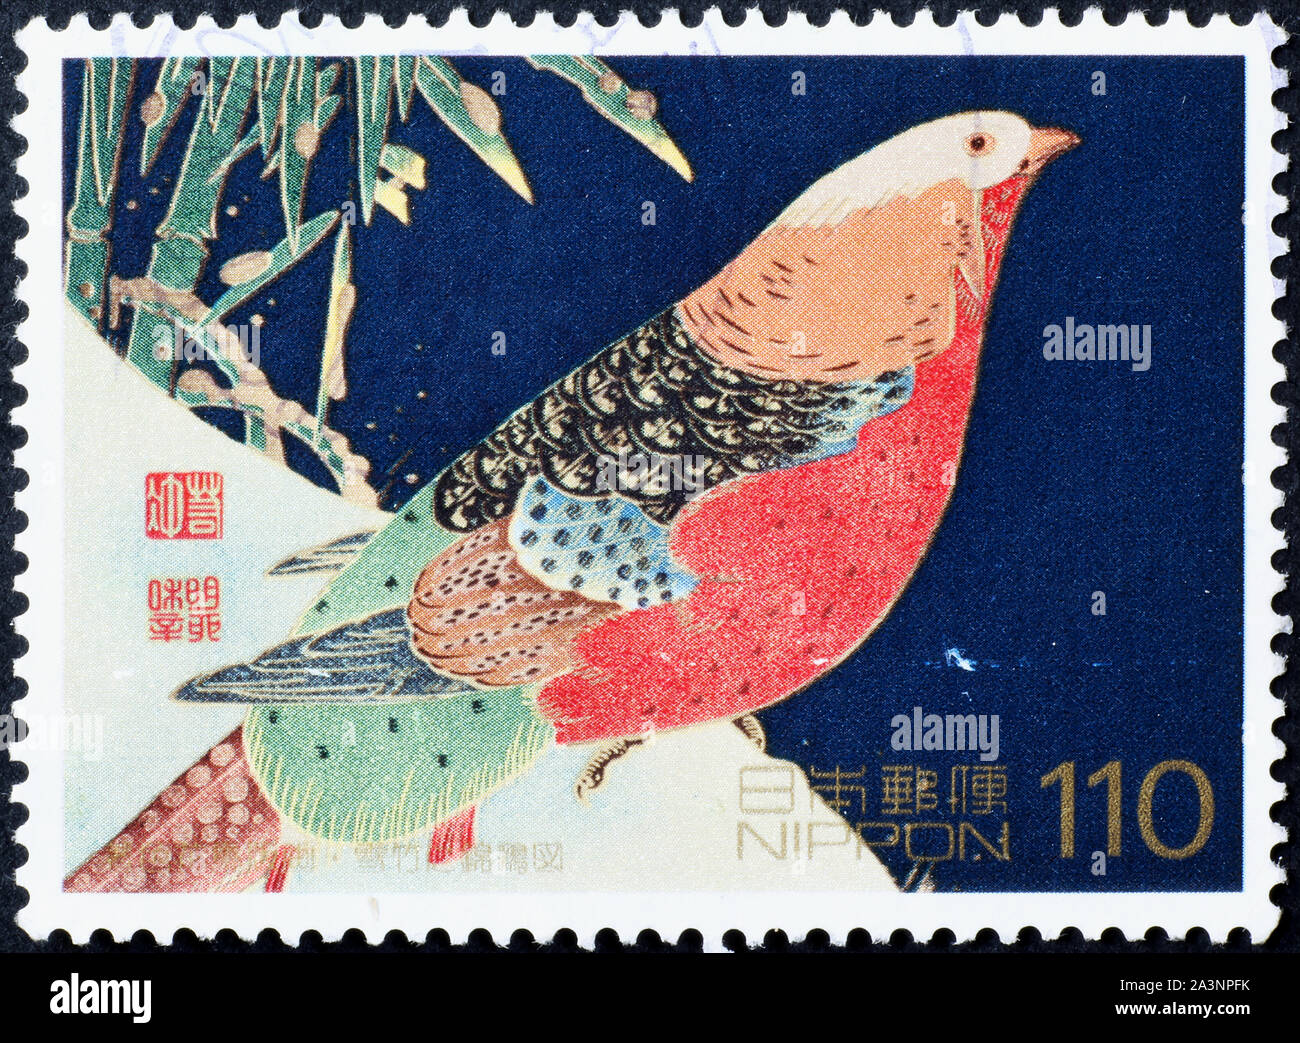 Peinture d'un faisan doré sur timbre japonais Banque D'Images